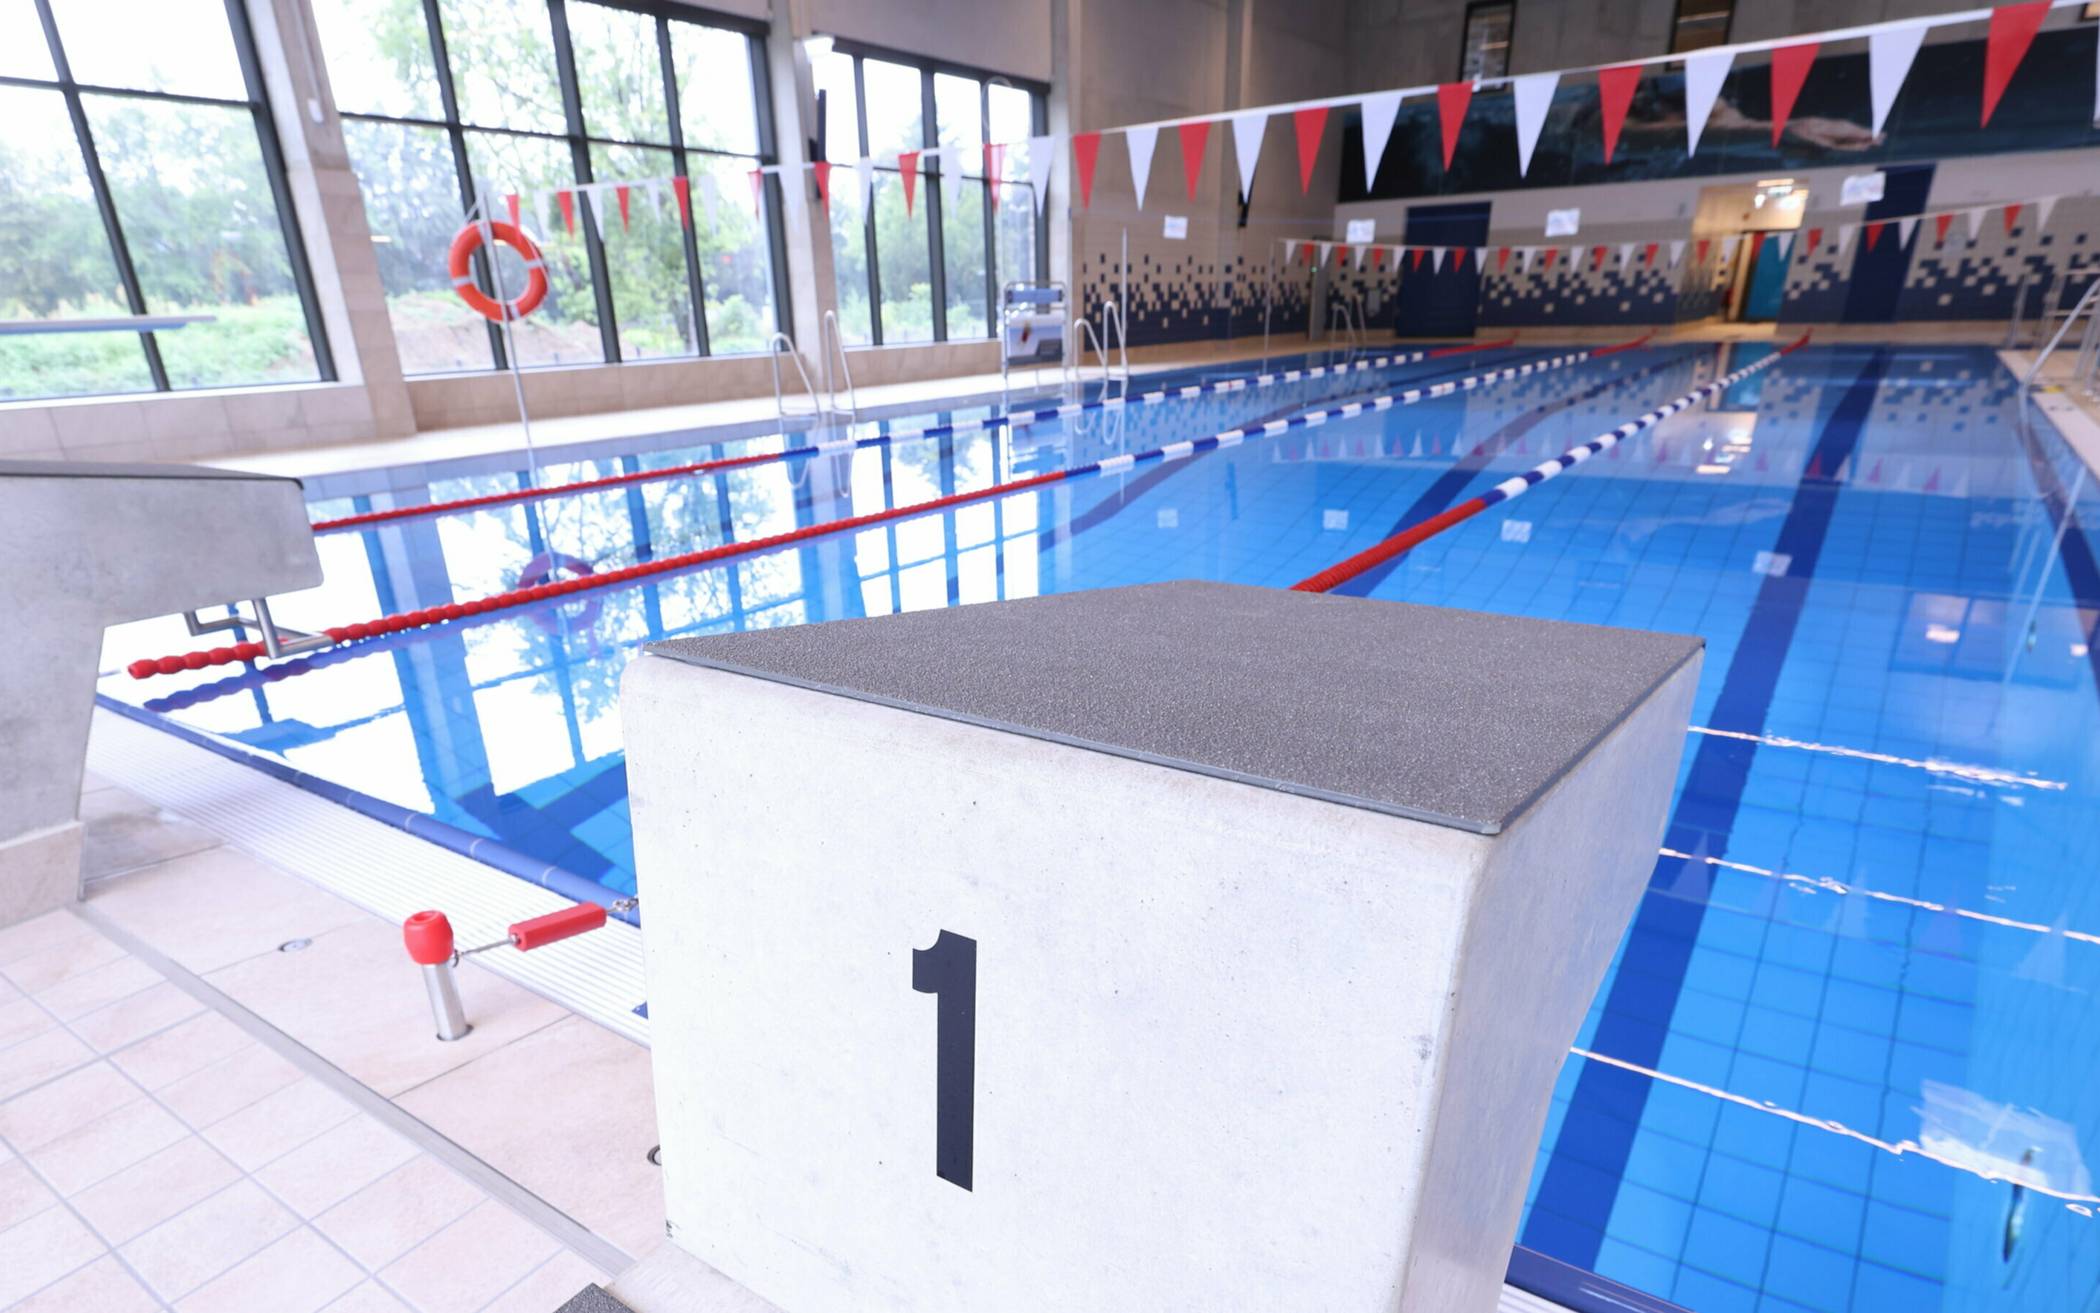  Nach dreijähriger Bauzeit ist das neue Schwimmbad in Benrath offen. Foto: Stadt/ Young  